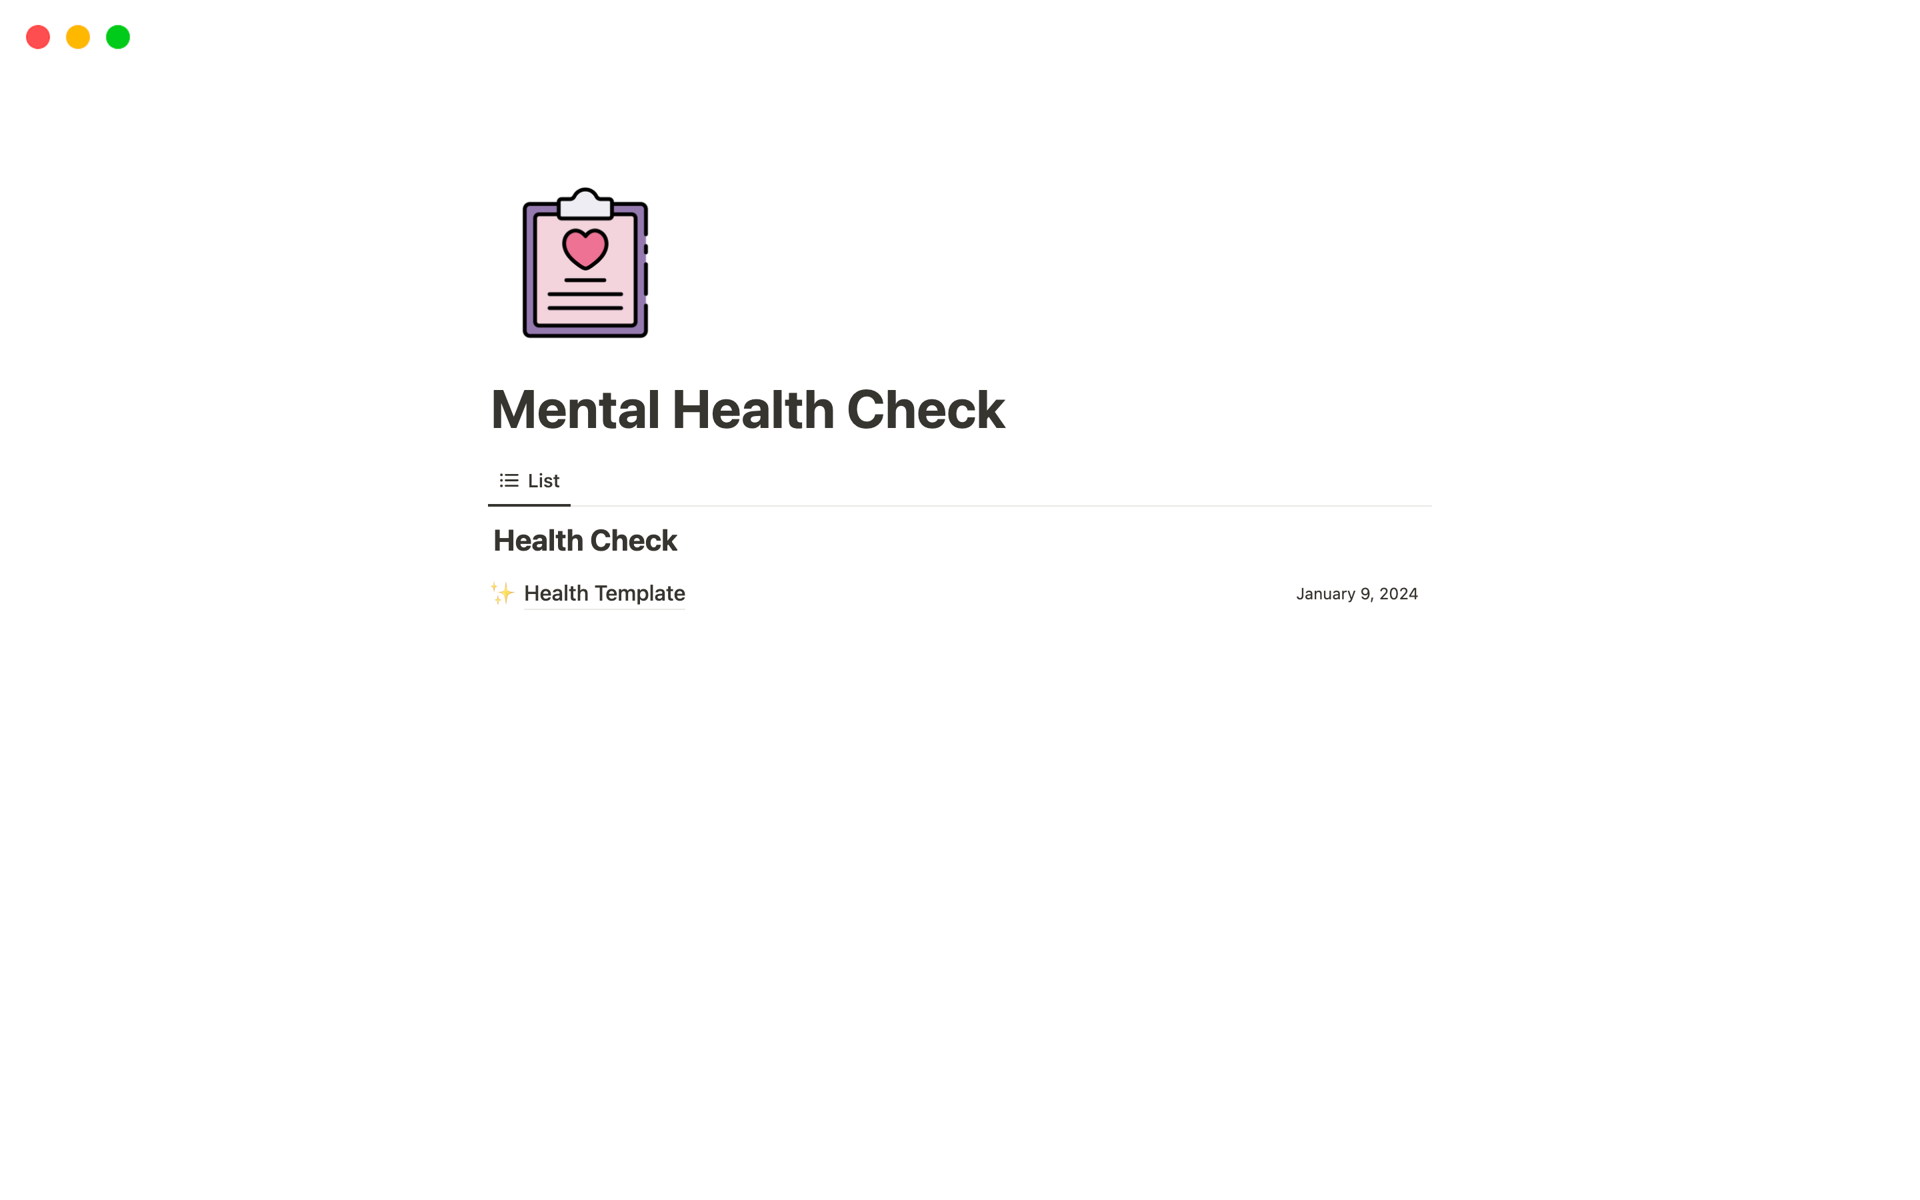 Vista previa de una plantilla para Mental Health Check